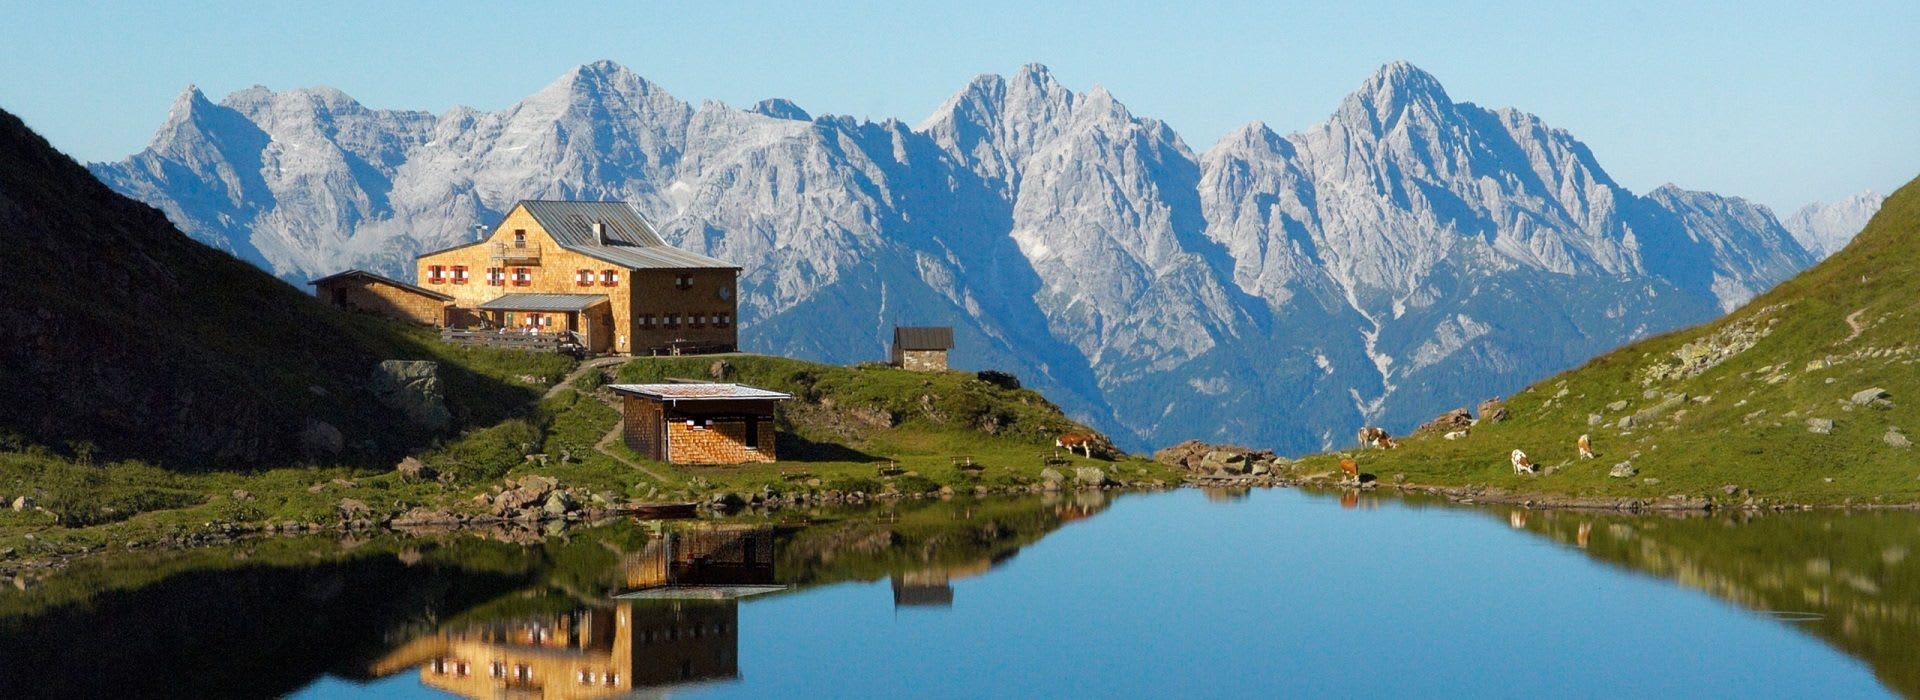 Tyrolsko nabízí opravdu úchvatné scenérie